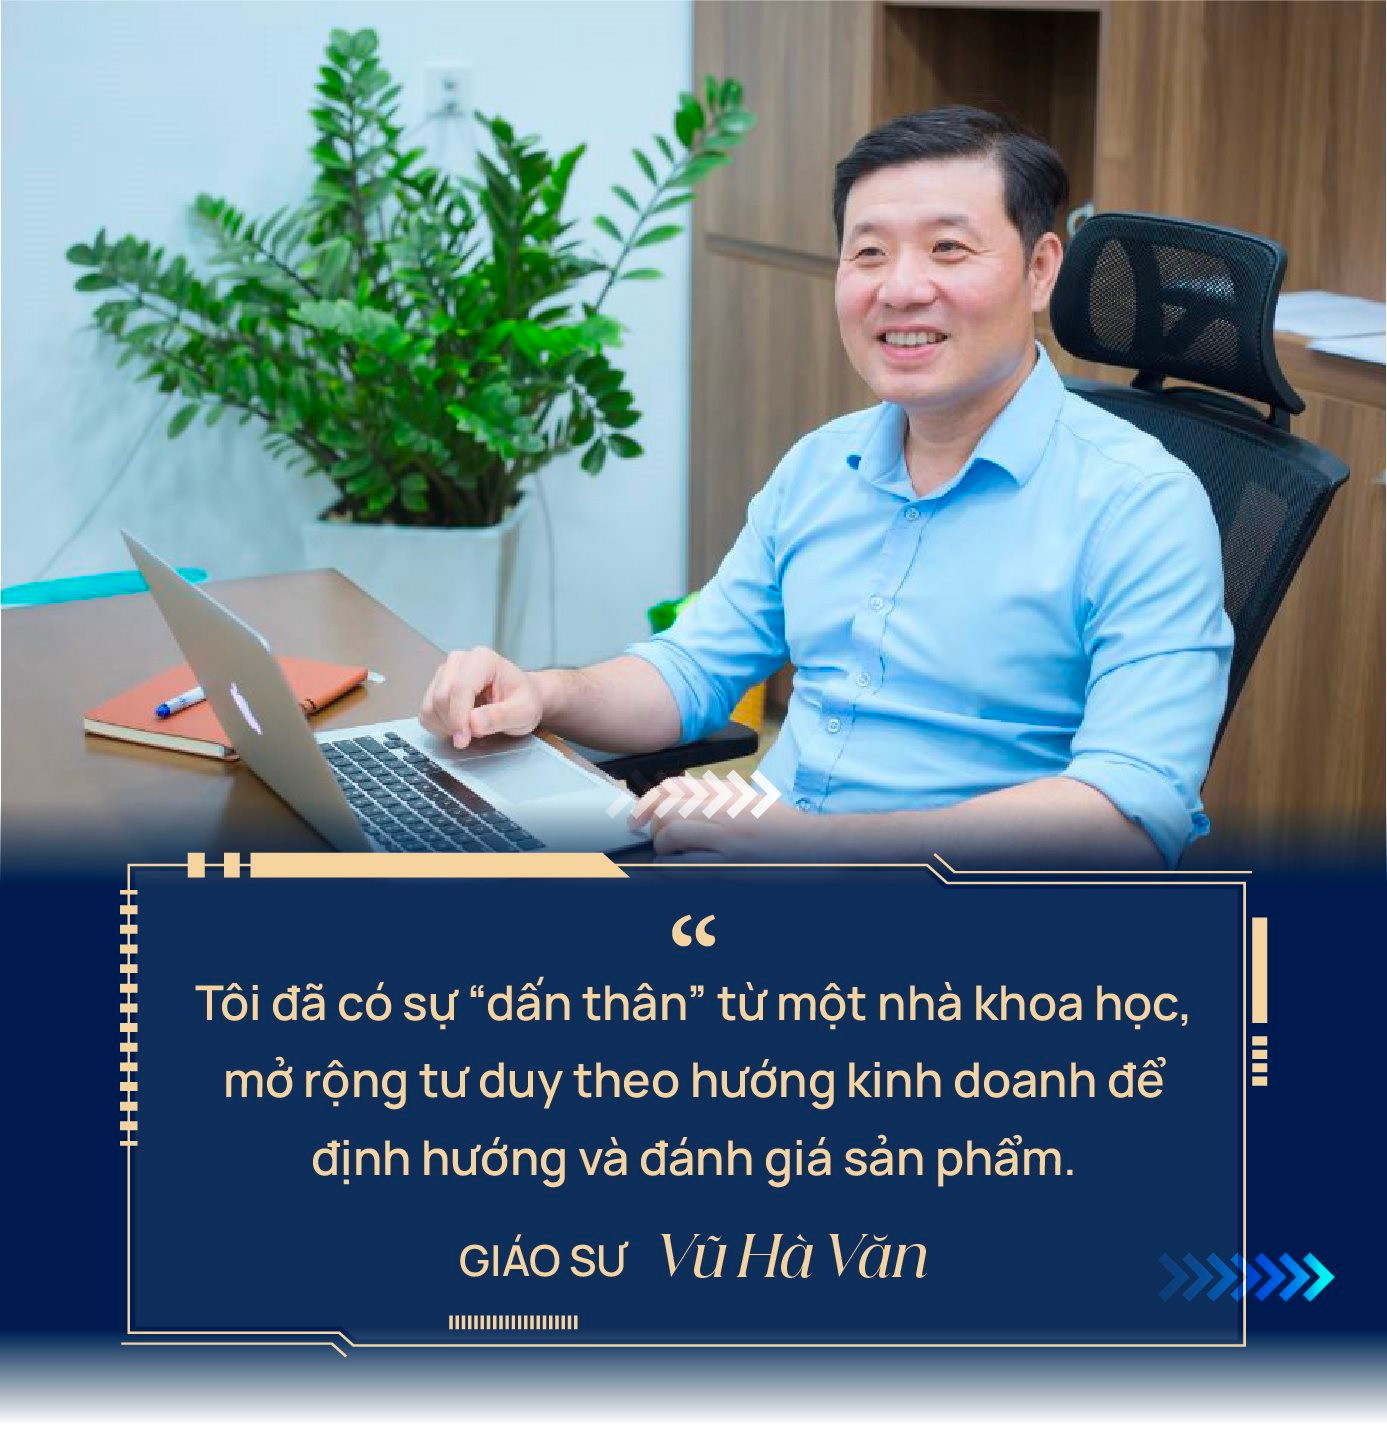 Giáo sư Vũ Hà Văn: Nhà toán học đi làm kinh doanh, xây ViGPT ‘không phải phép màu’ nhưng bài bản, nghiêm túc từ gốc rễ - Ảnh 10.